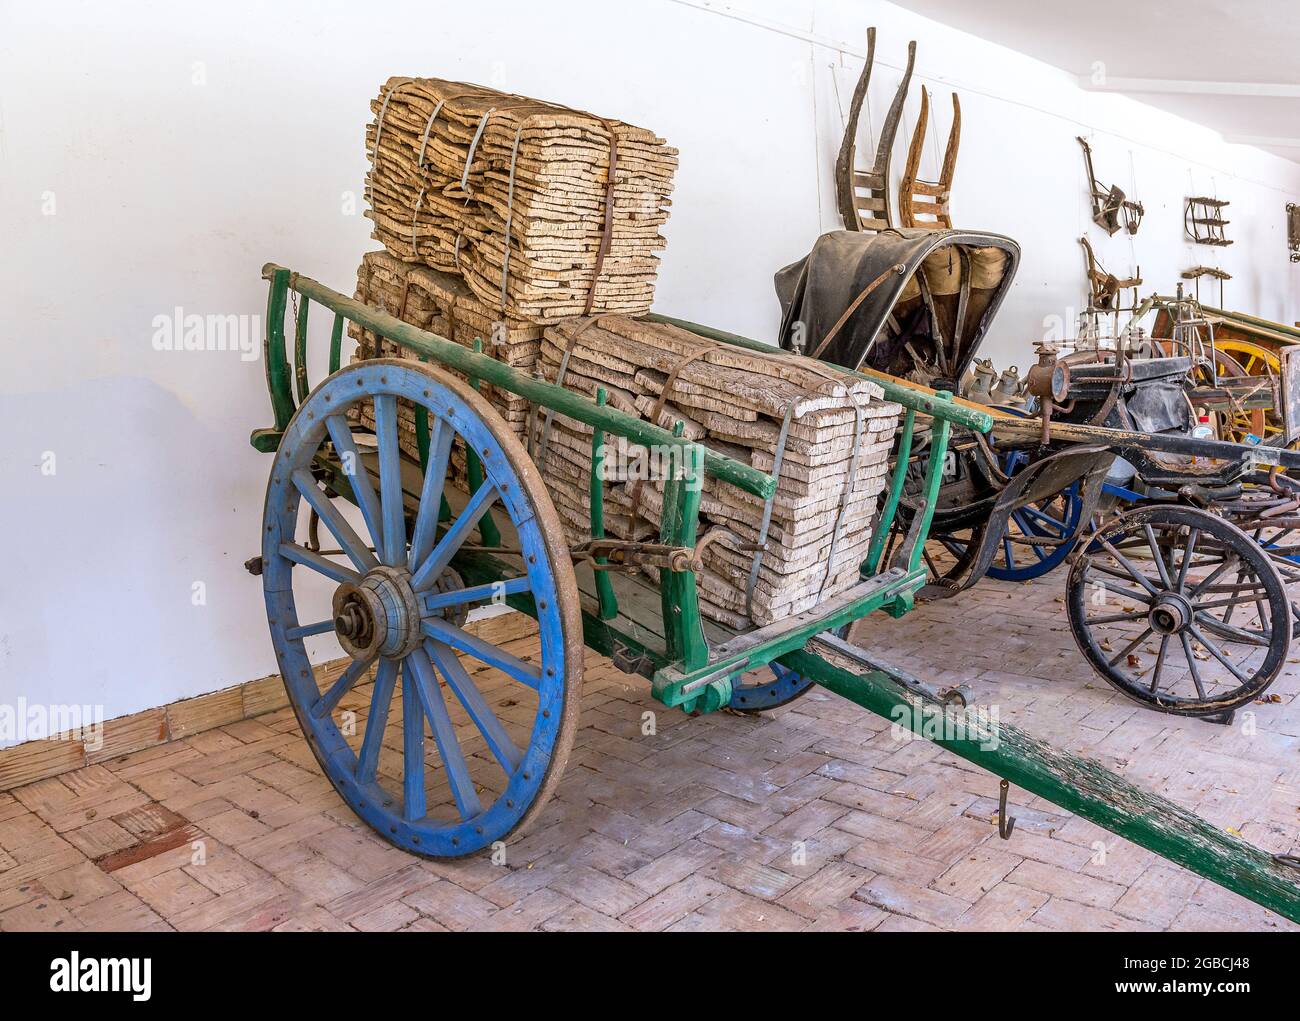 Expositions de charrettes artisanales dessinées par des chevaux au musée Sao bras de Alportel algarve portugal Banque D'Images